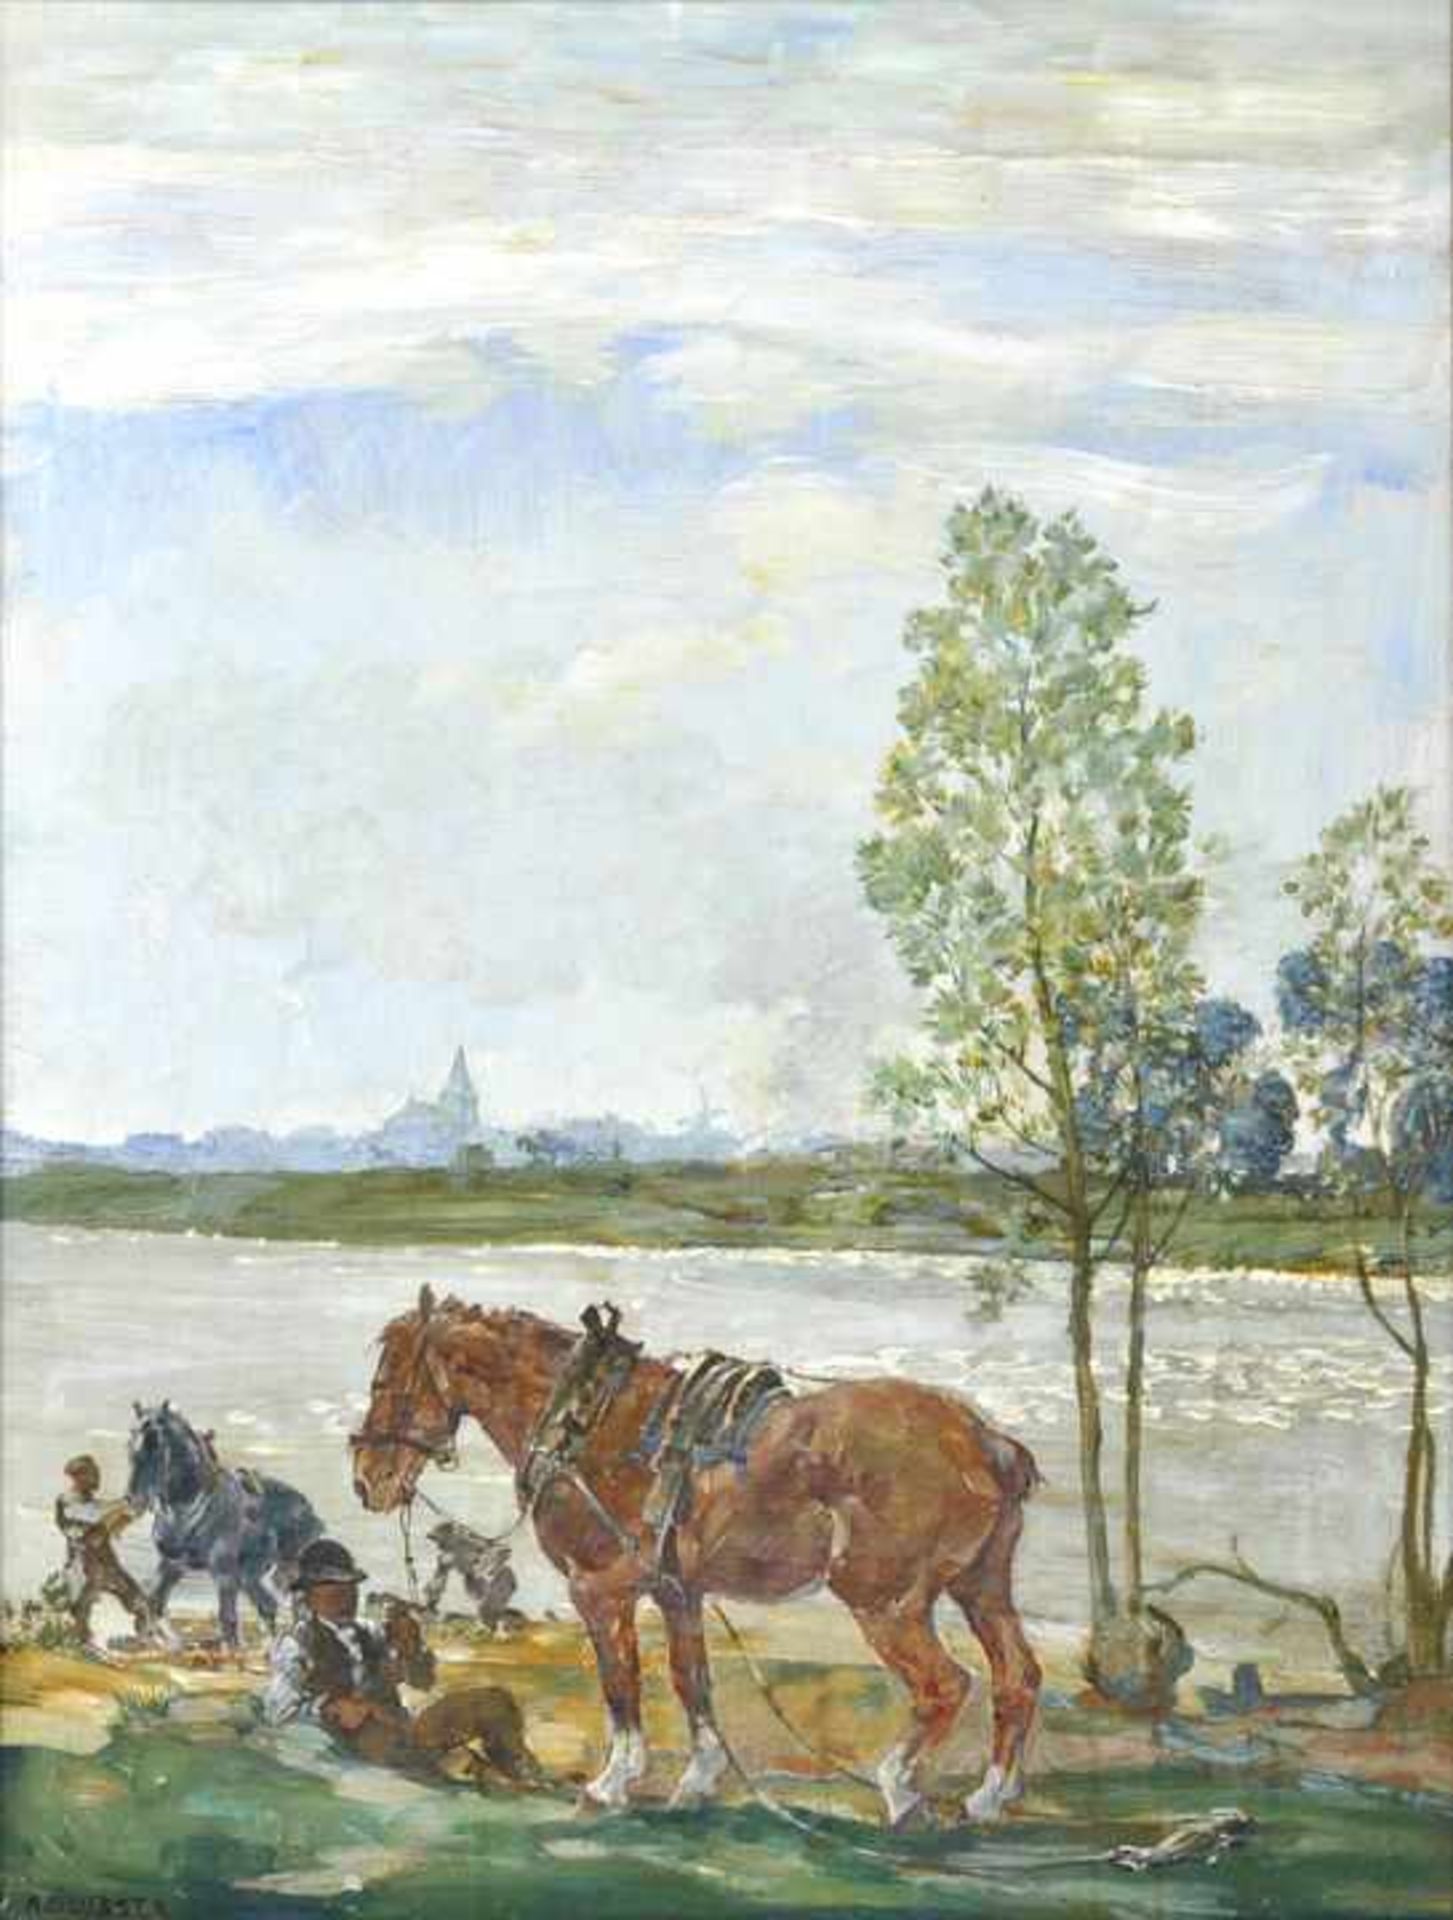 Deusser, August. 1870 Köln - 1942 KonstanzMänner mit Pferden am Fluss. Öl auf Leinwand, doubl.,